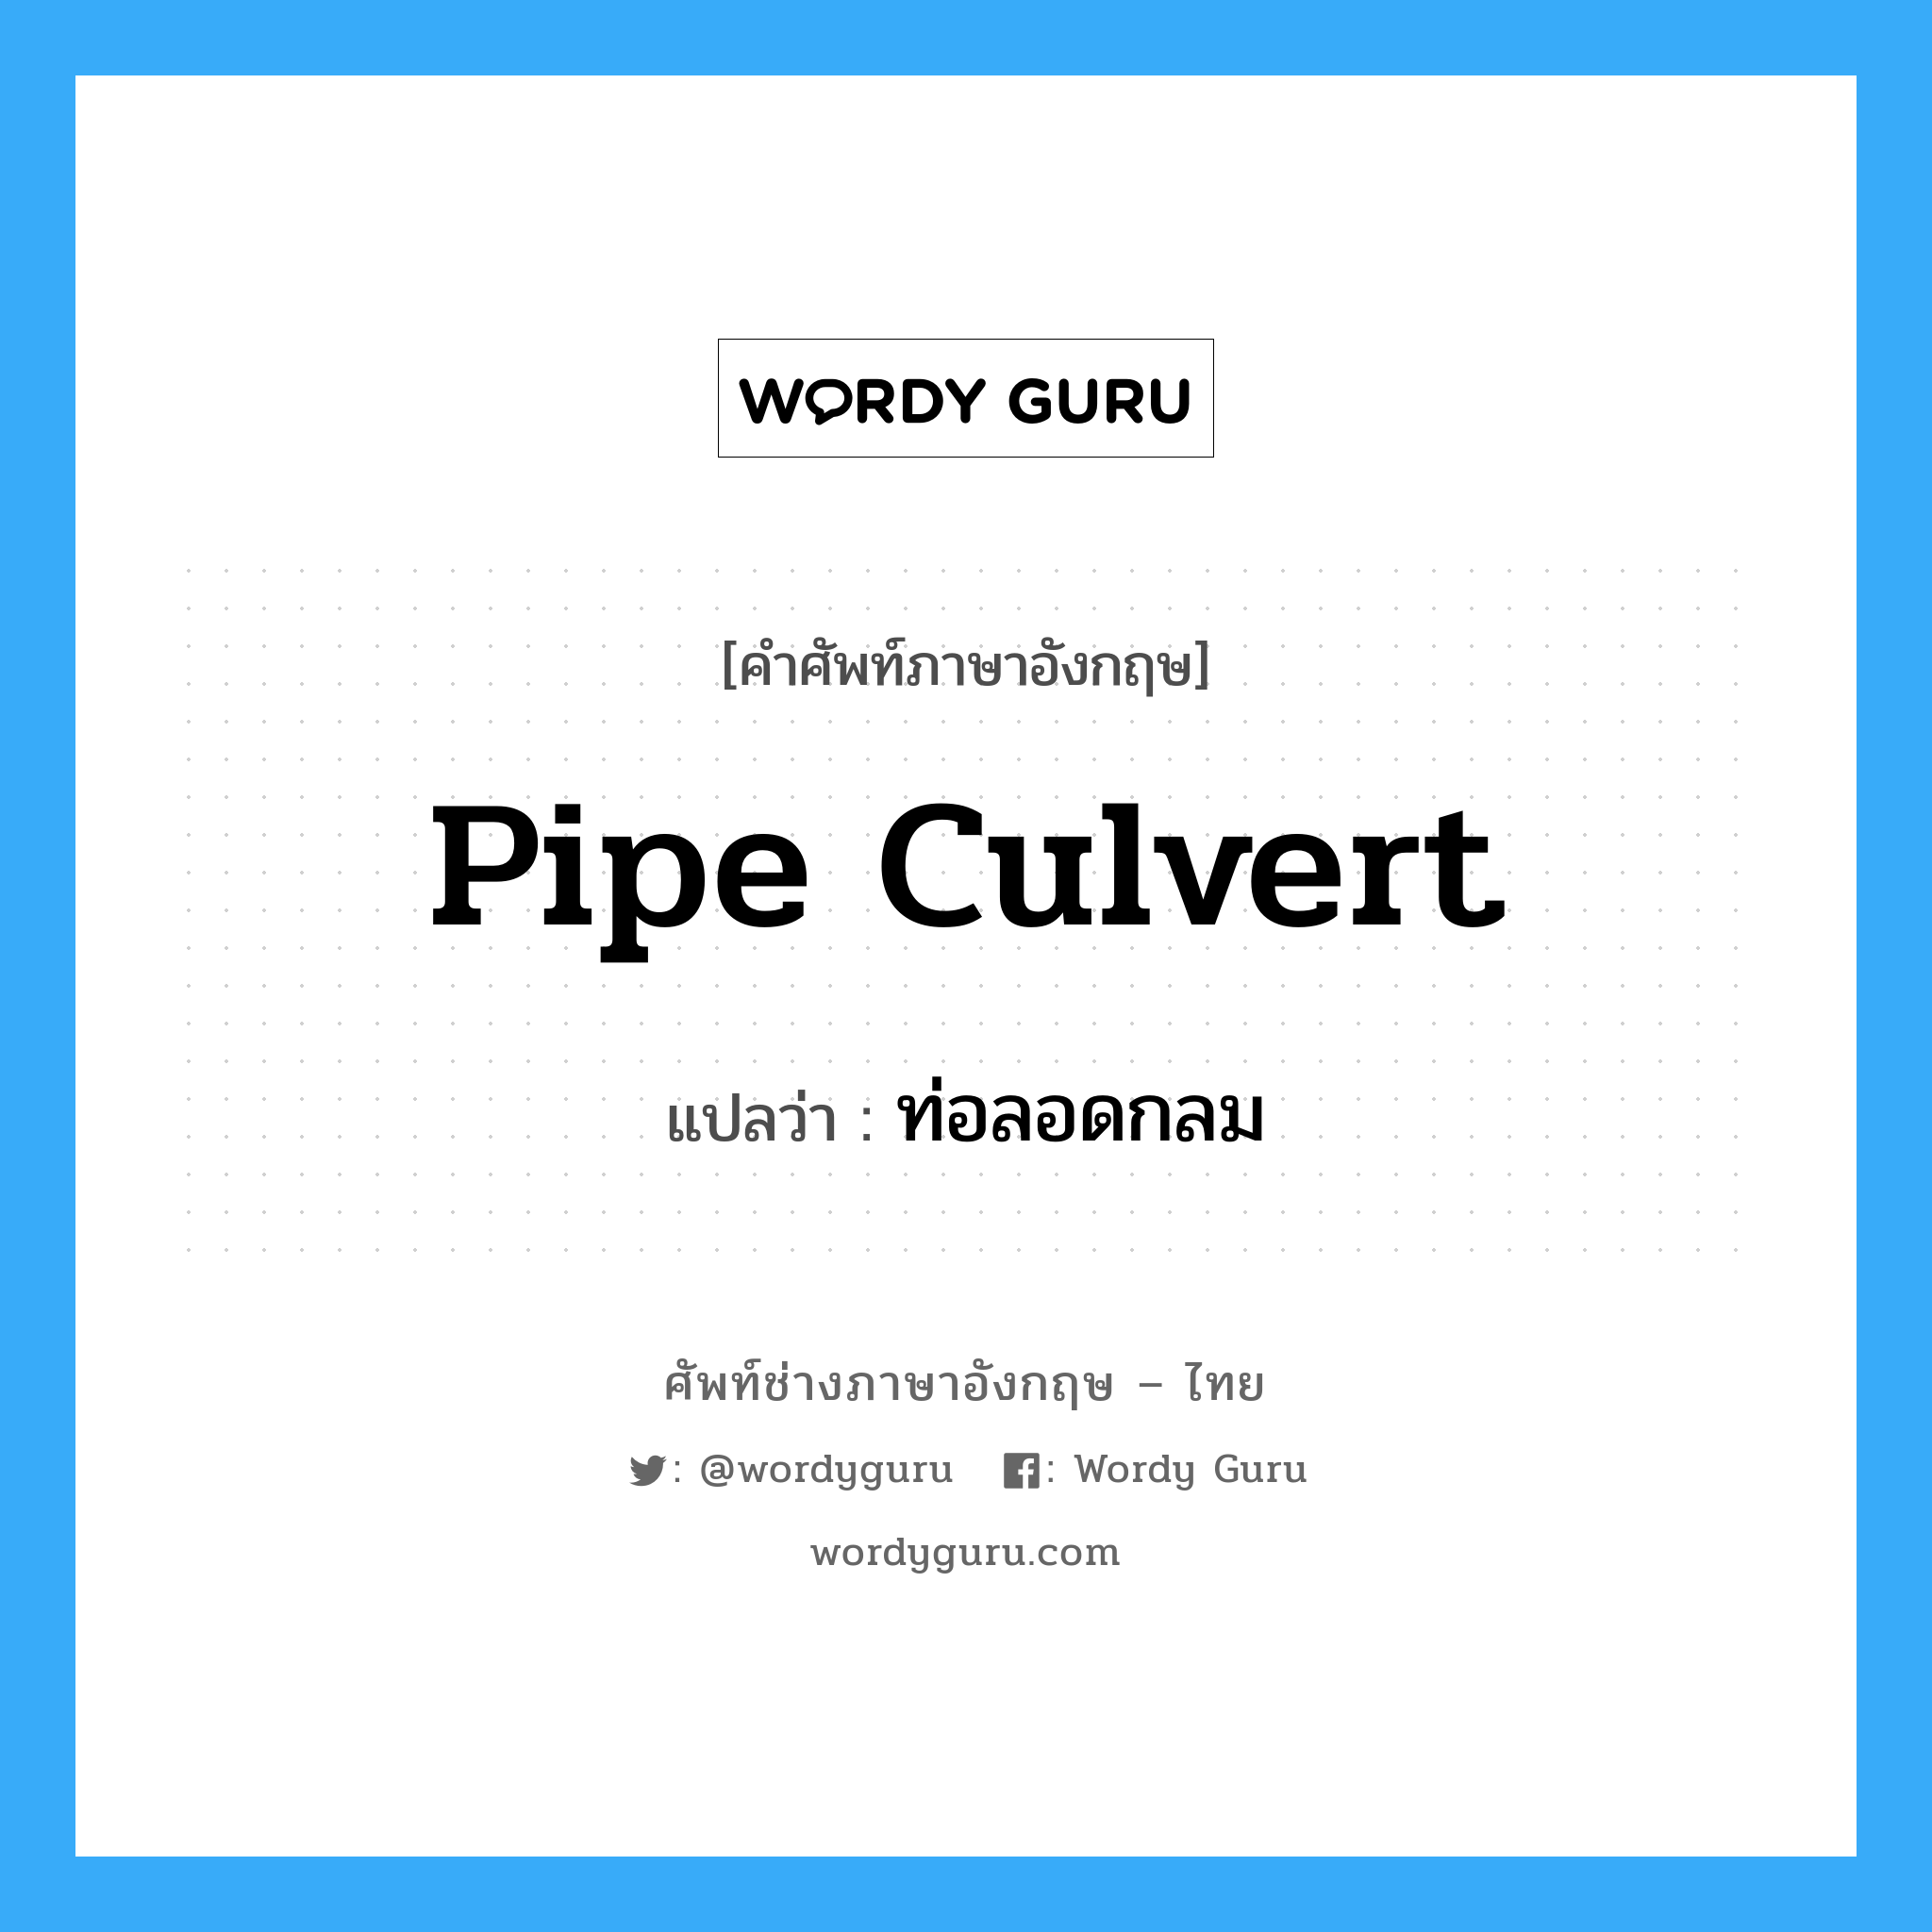 pipe culvert แปลว่า?, คำศัพท์ช่างภาษาอังกฤษ - ไทย pipe culvert คำศัพท์ภาษาอังกฤษ pipe culvert แปลว่า ท่อลอดกลม